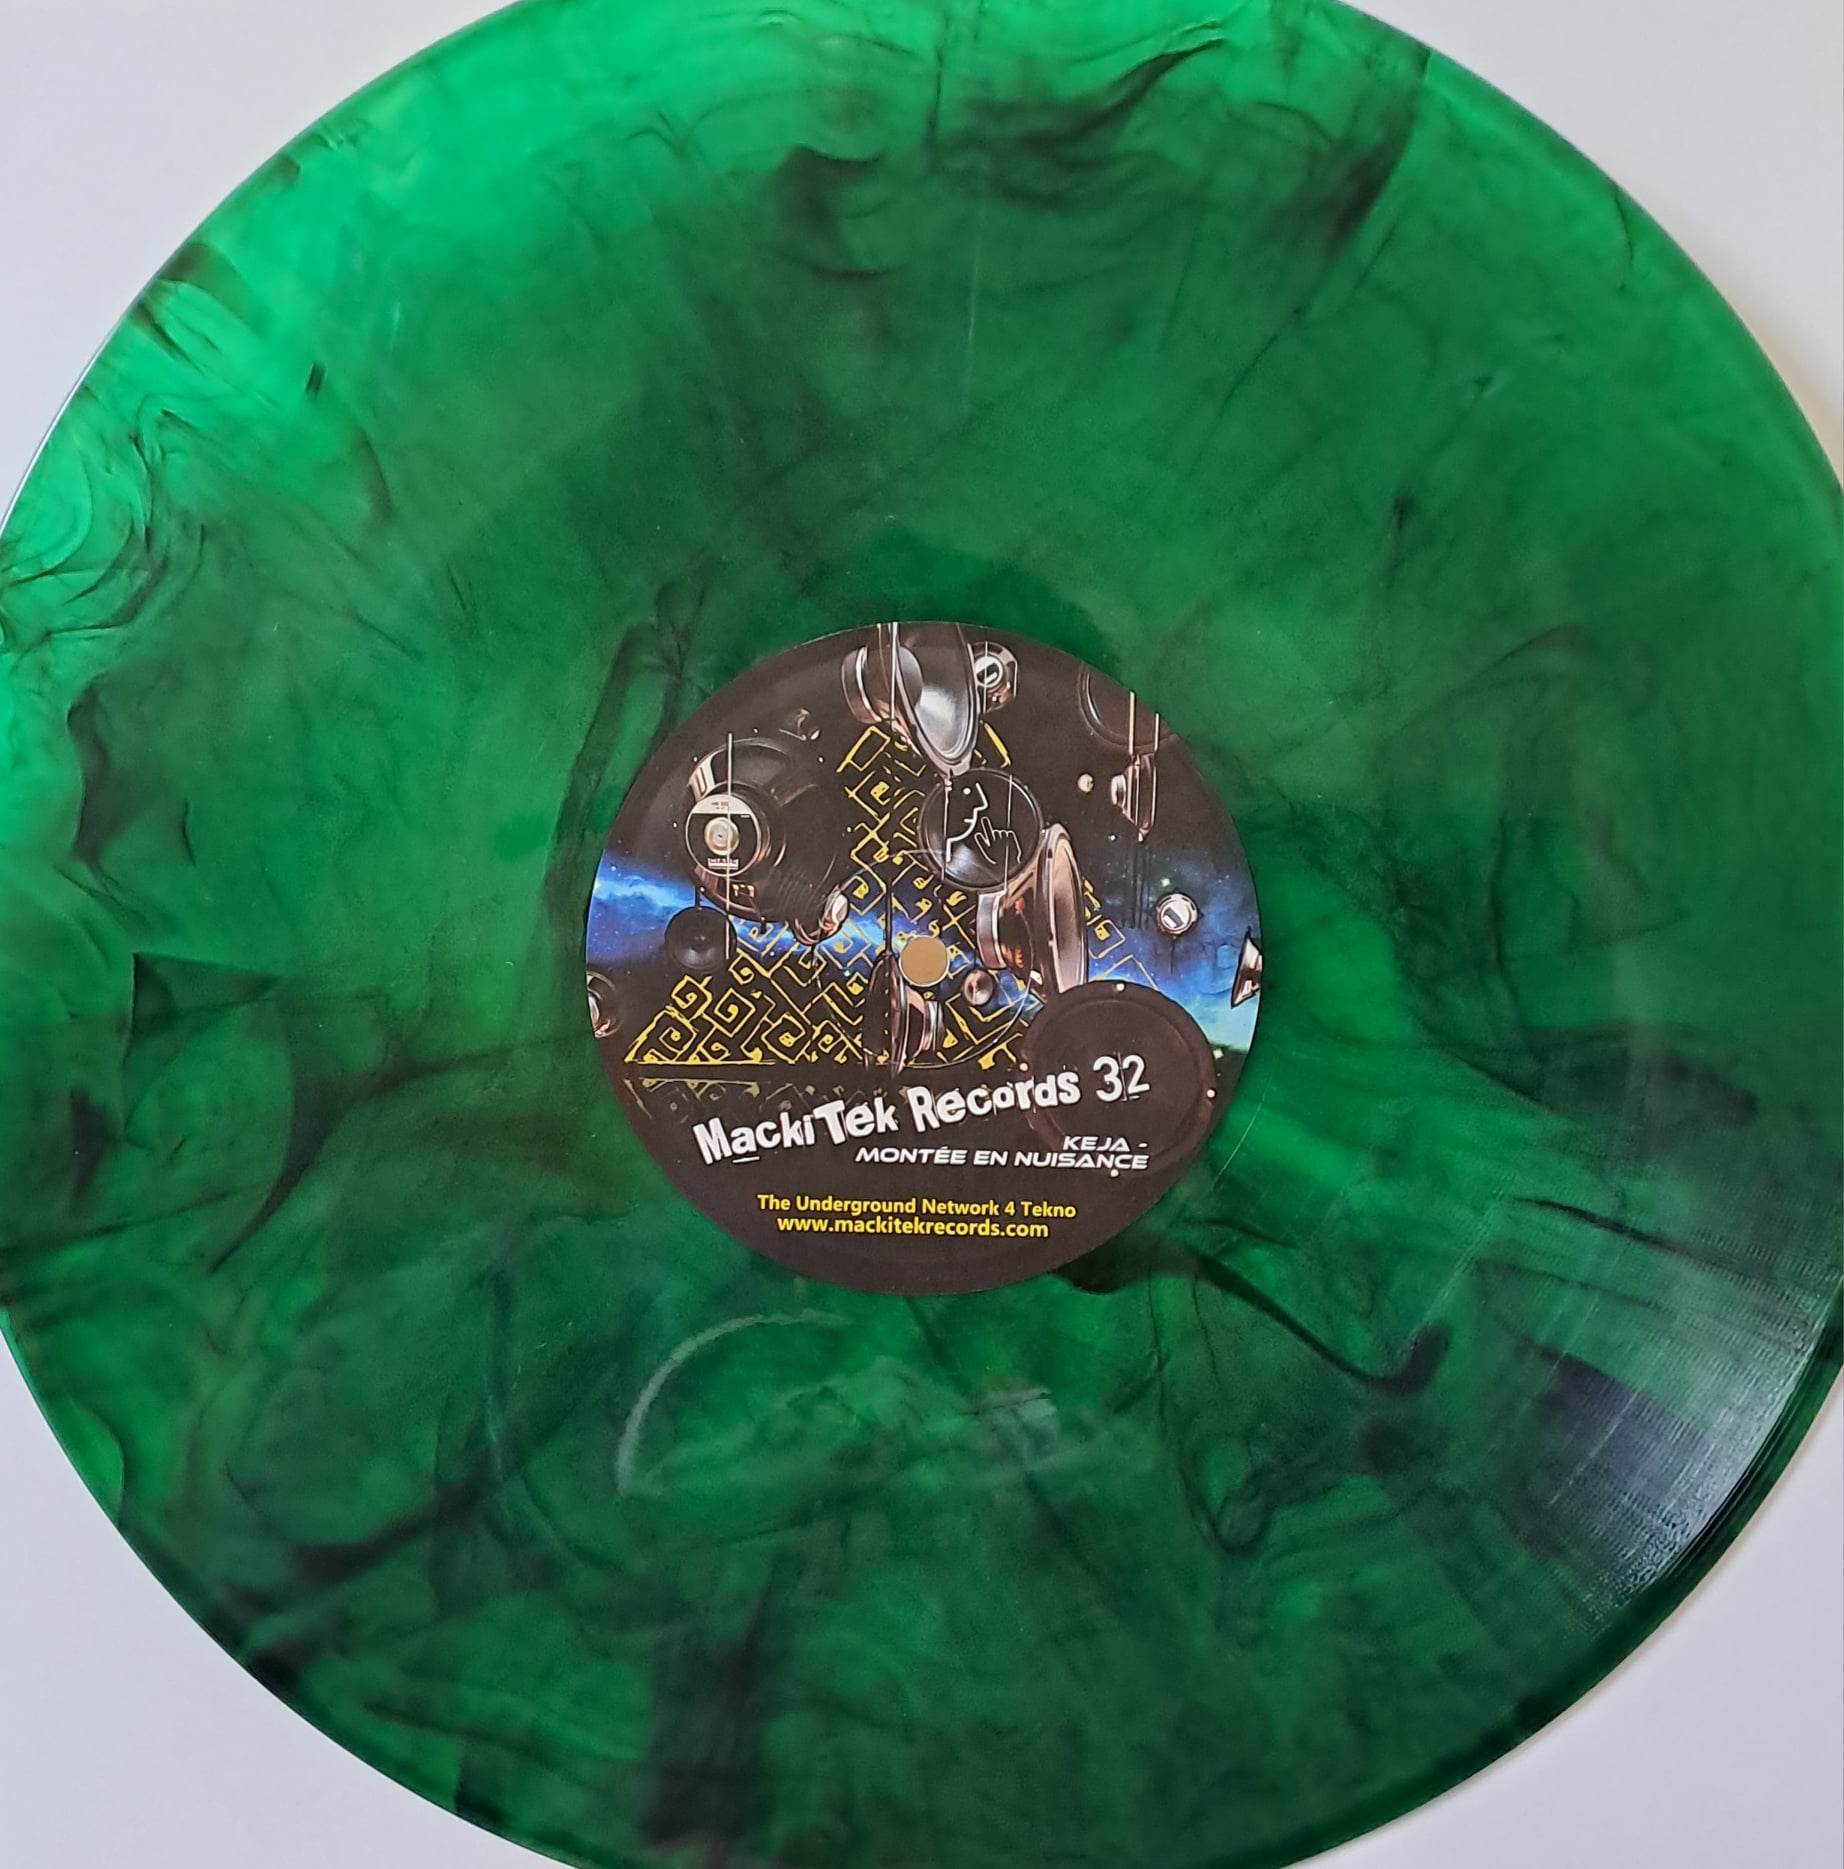 Mackitek Records 32 (Vert marbré) - vinyle tribecore